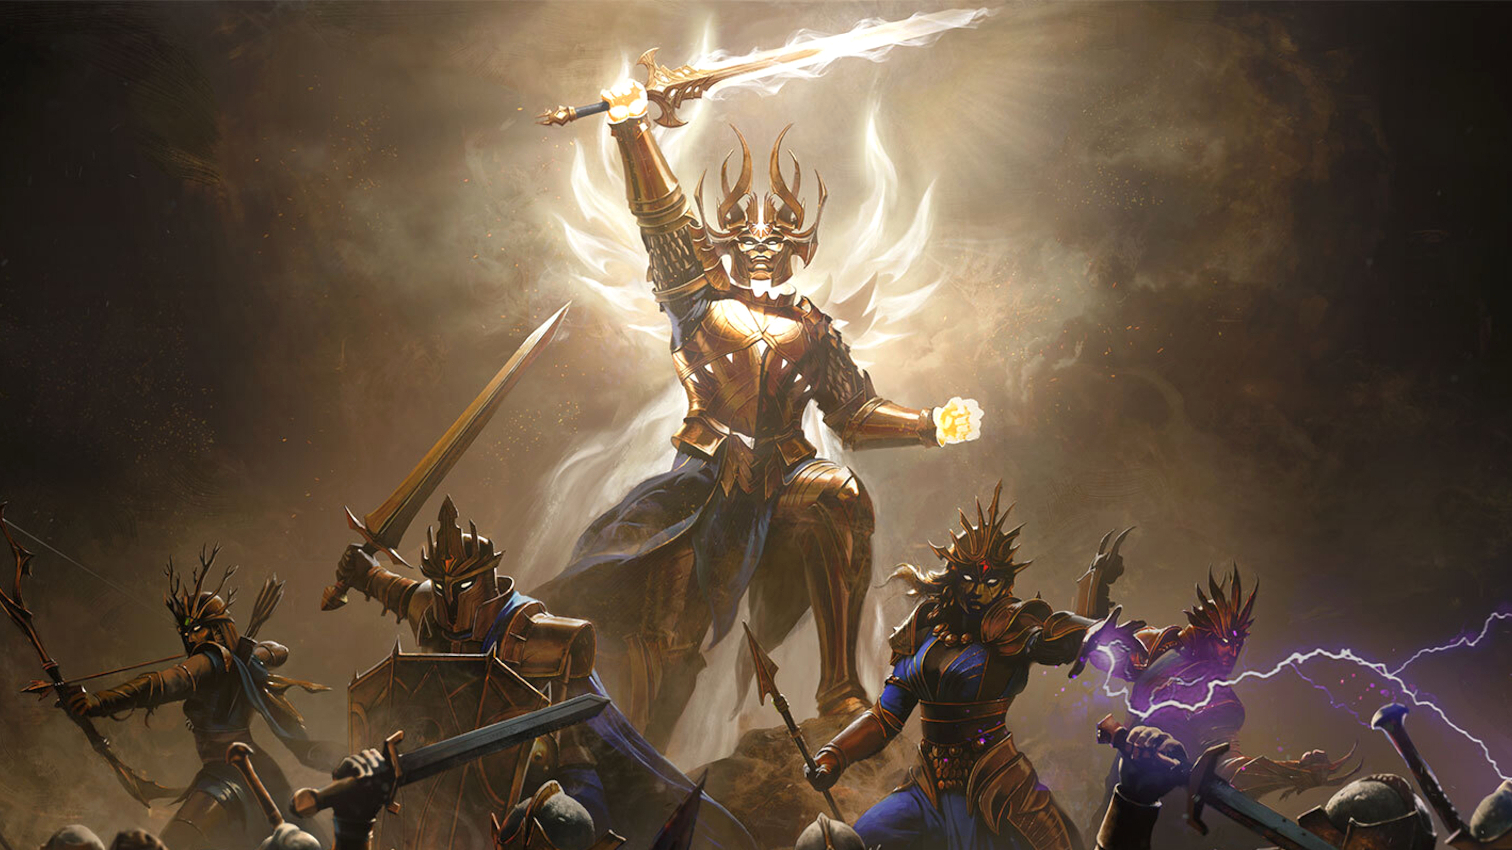 Tudo sobre Diablo Immortal: gameplay e detalhes do lançamento da Blizzard